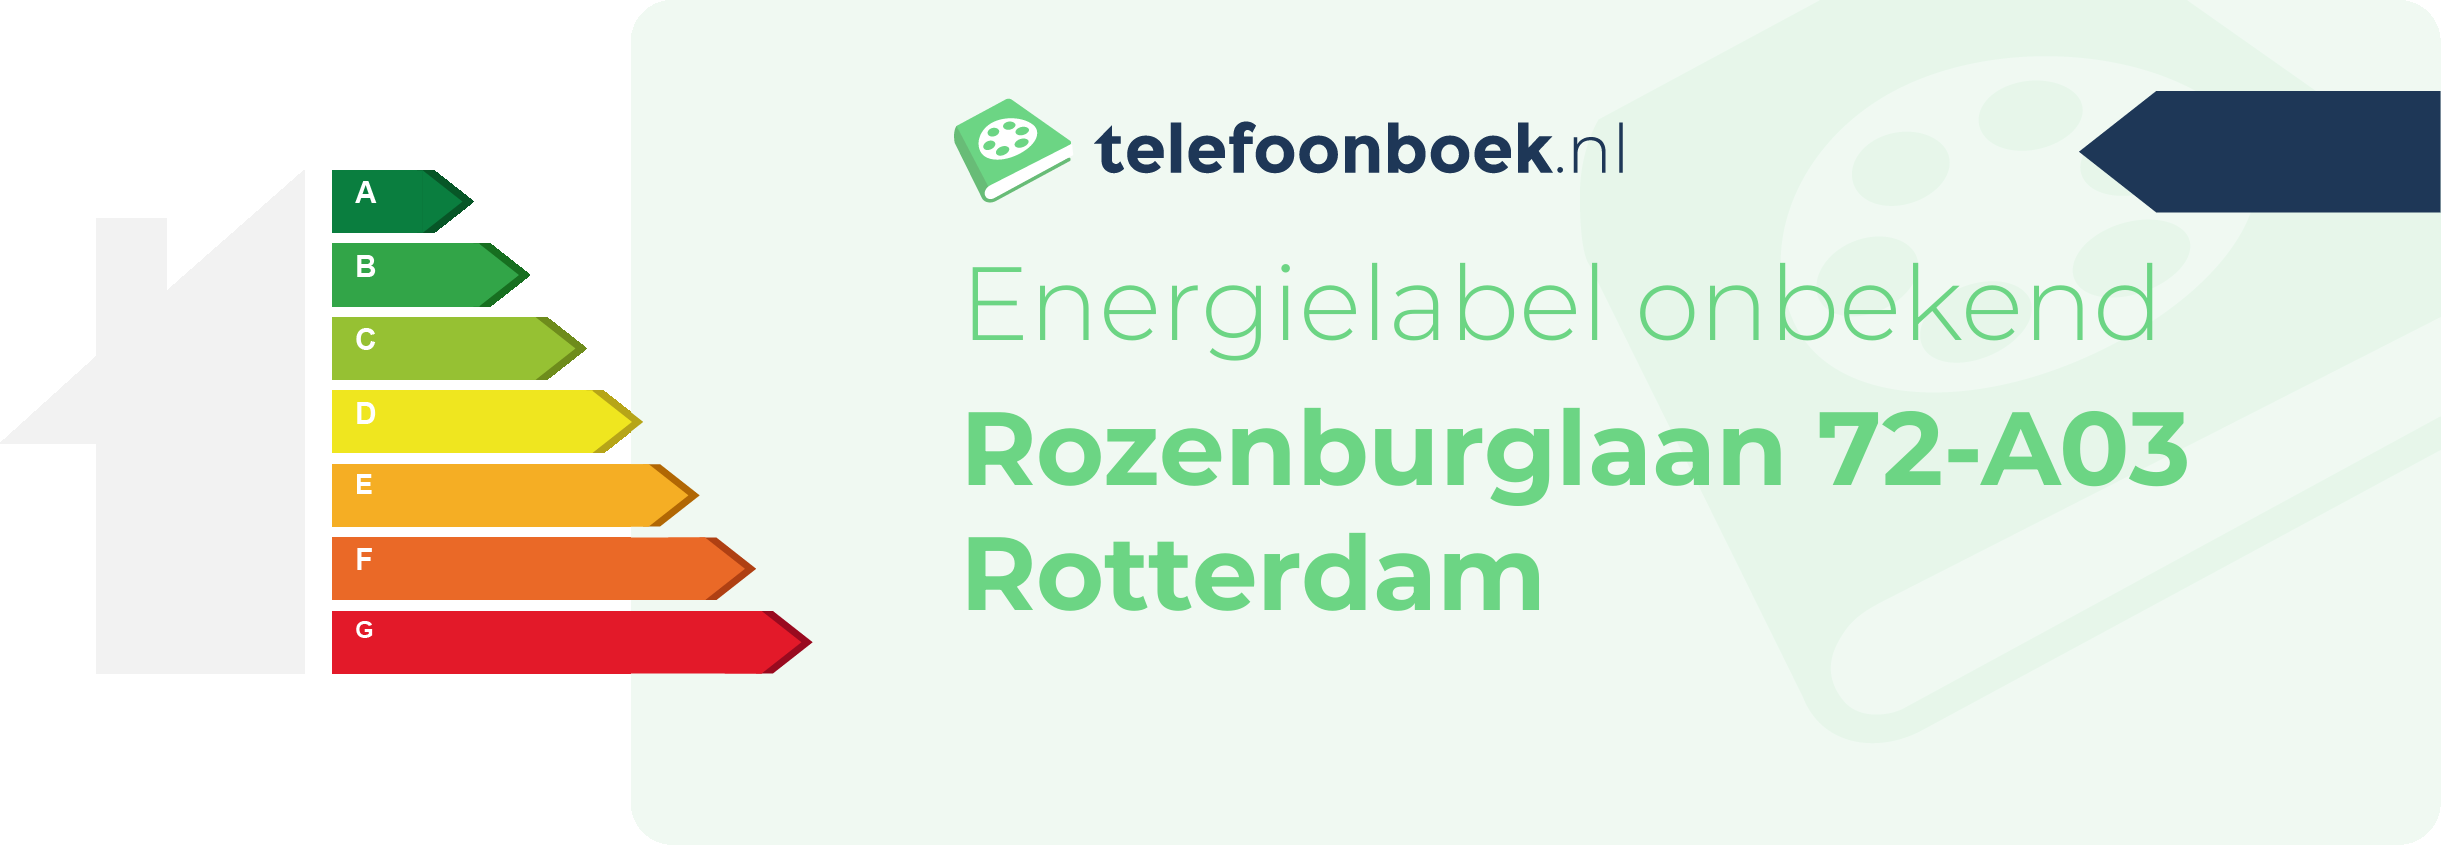 Energielabel Rozenburglaan 72-A03 Rotterdam